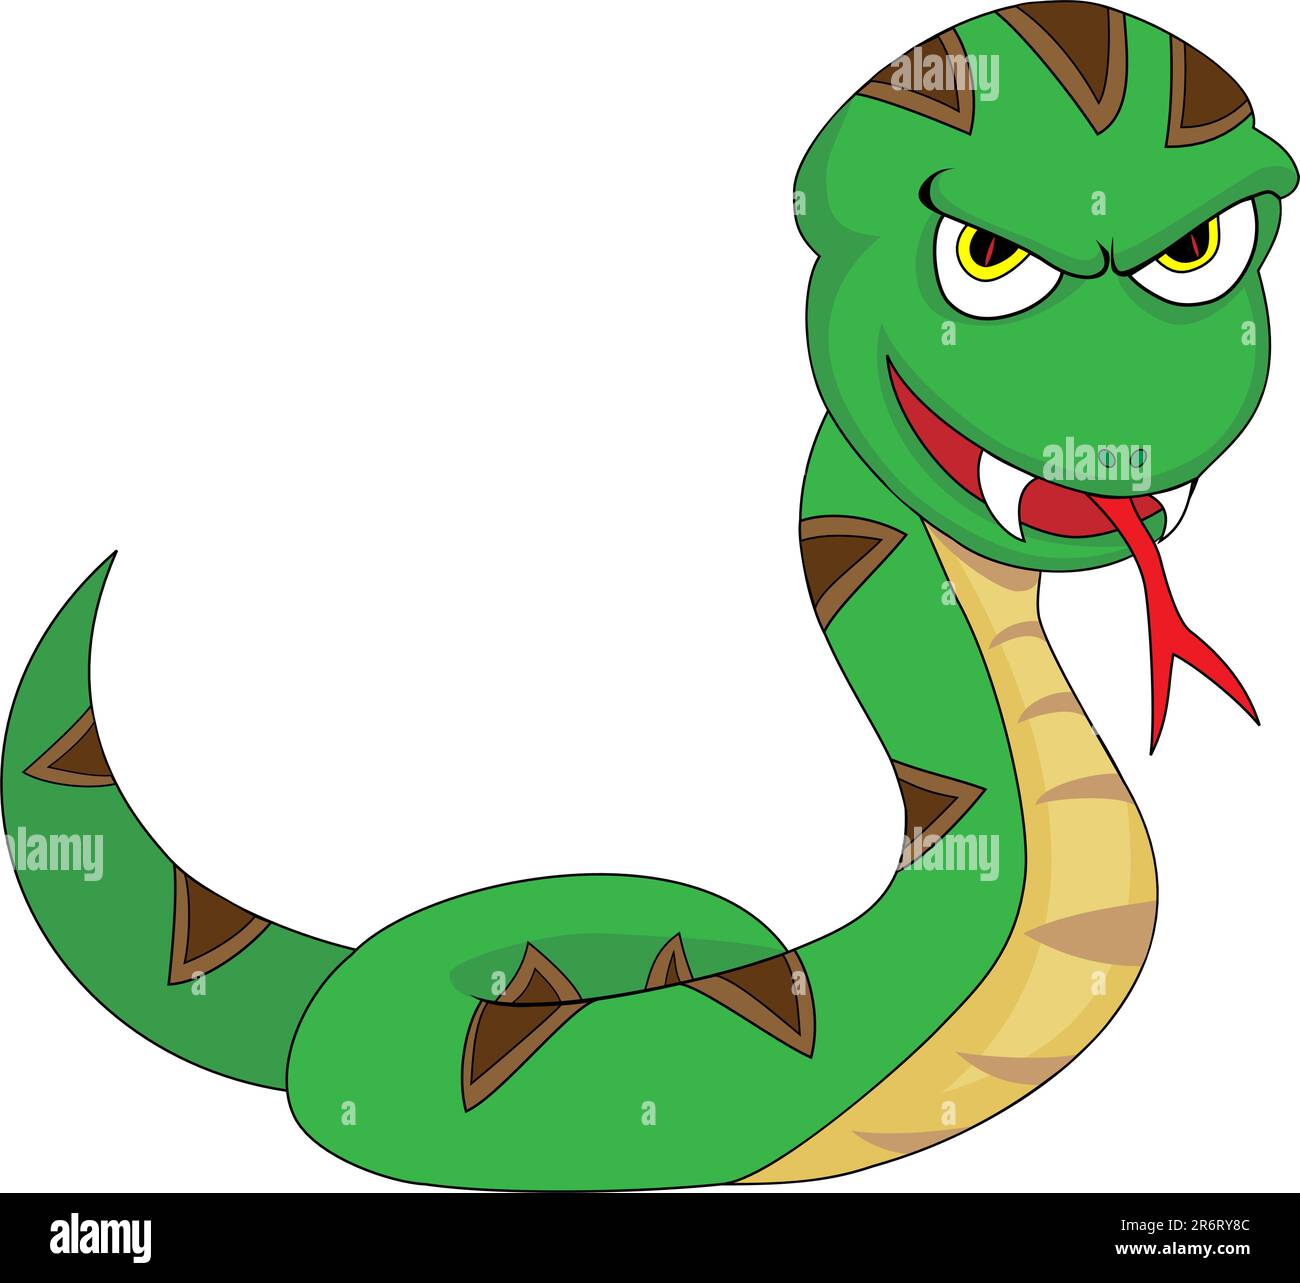 Immagine di un serpente dall'aspetto minaccioso Illustrazione Vettoriale